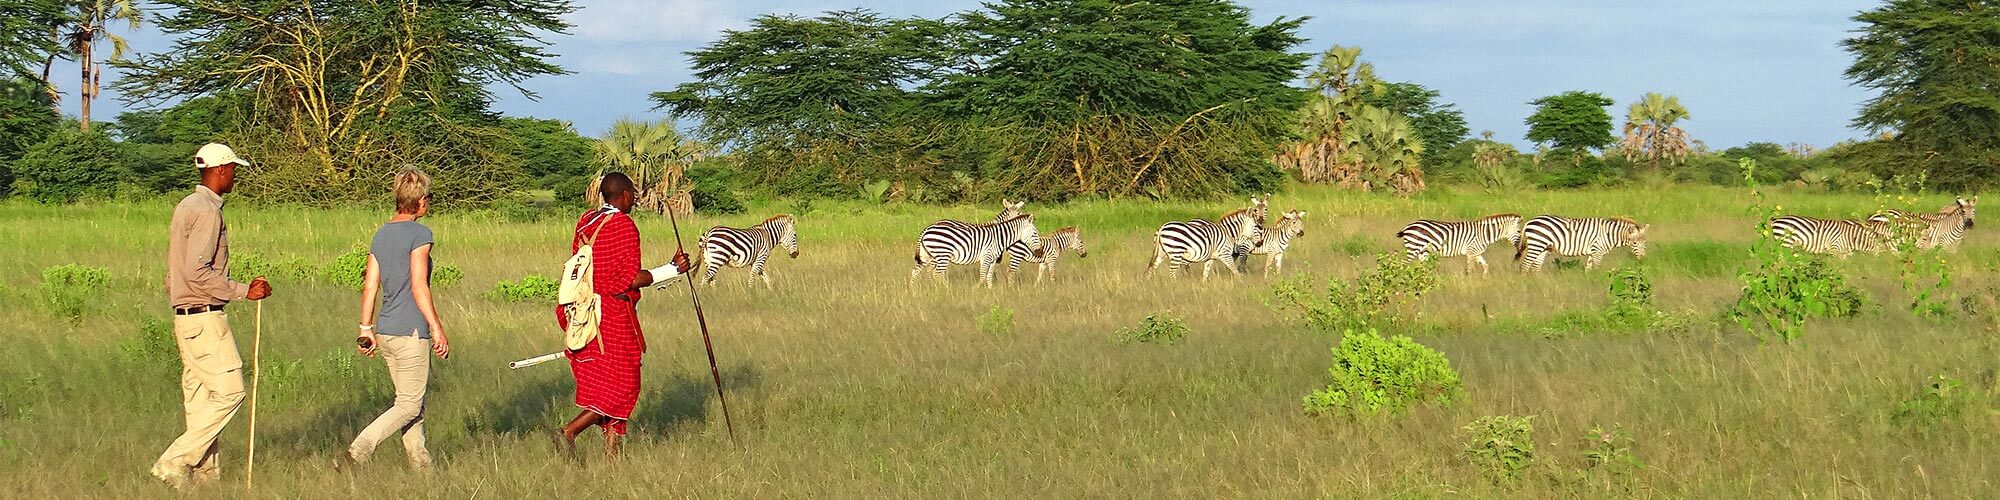 Fuss-Safari in Tanzania - ganz nah, mittendrin